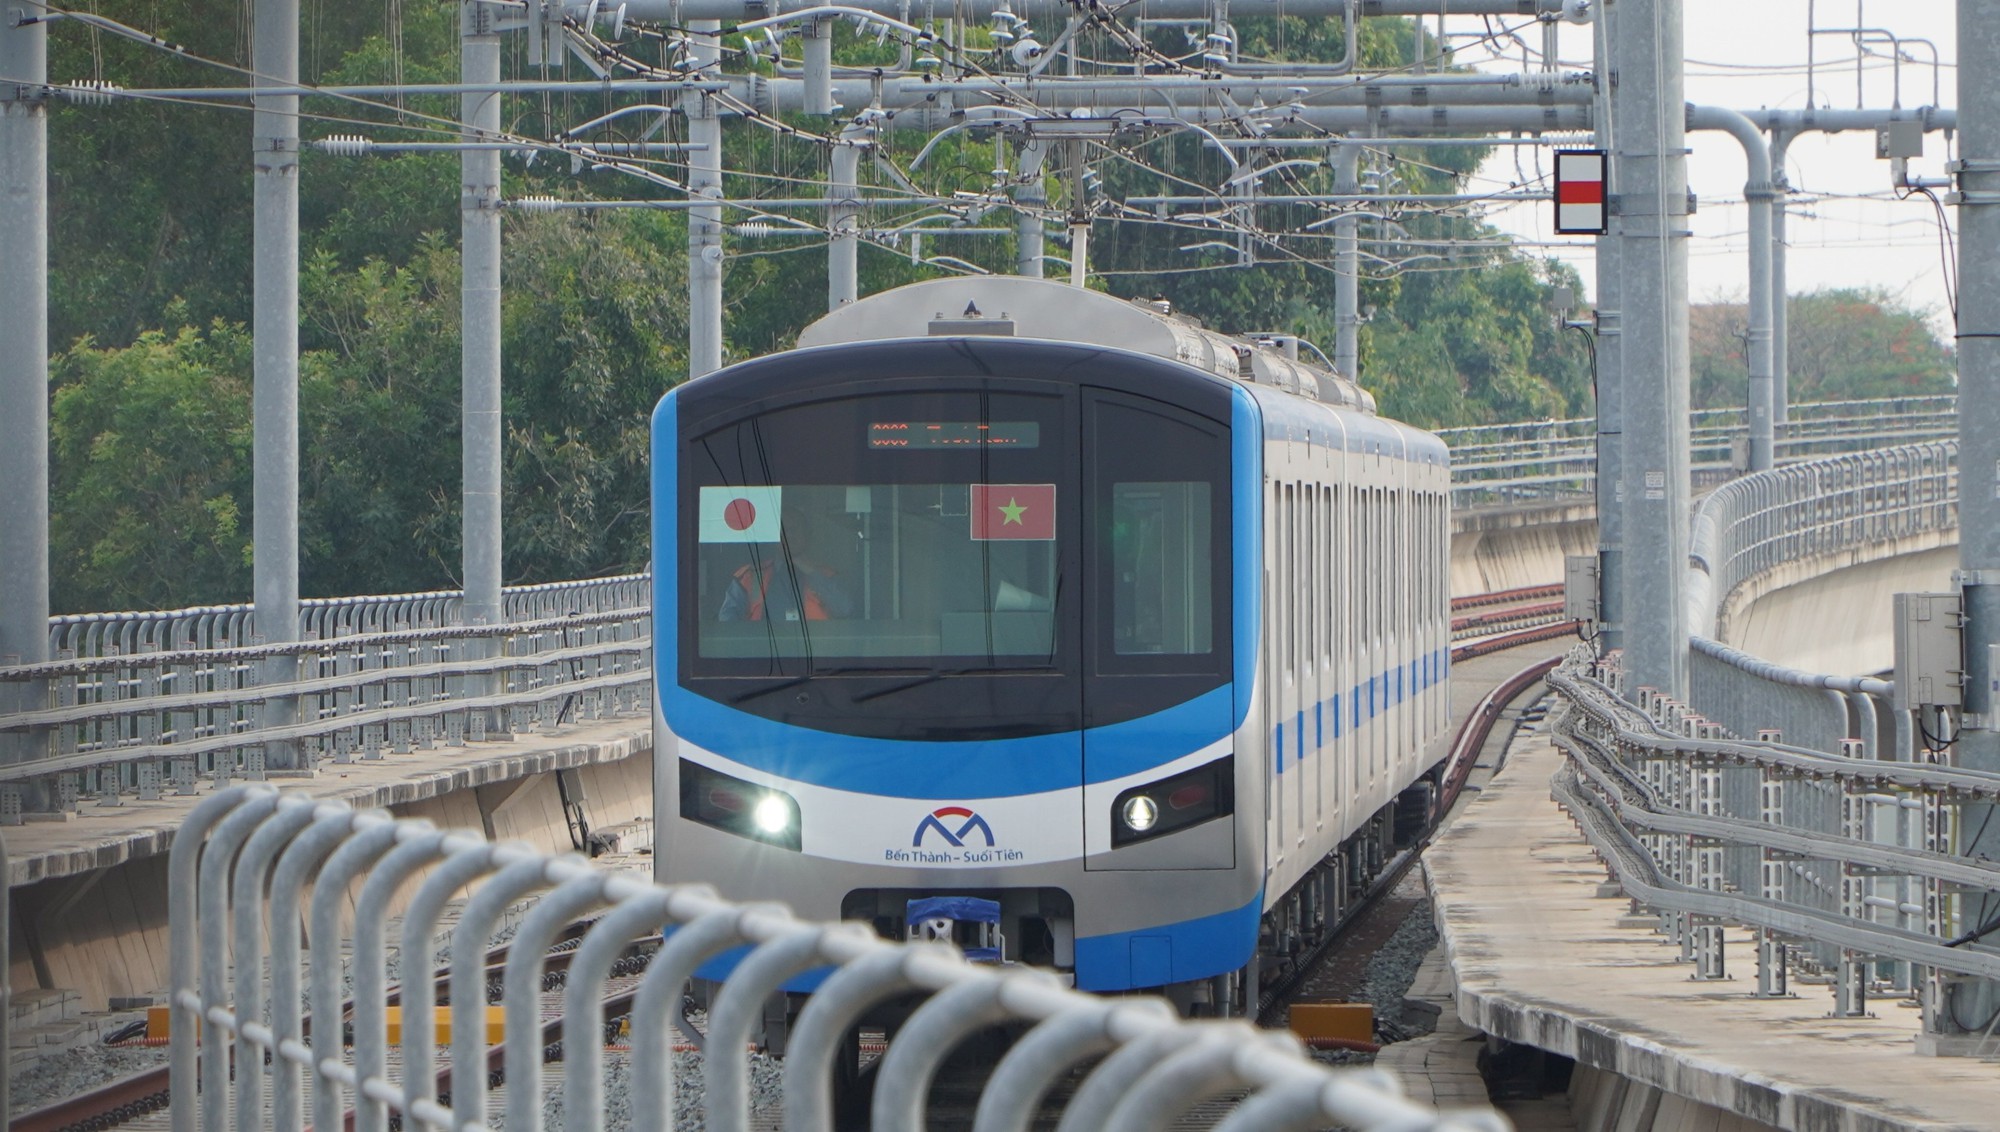 Metro số 1 sắp chạy trình diễn trên toàn tuyến Bến Thành - Suối Tiên - Ảnh 1.